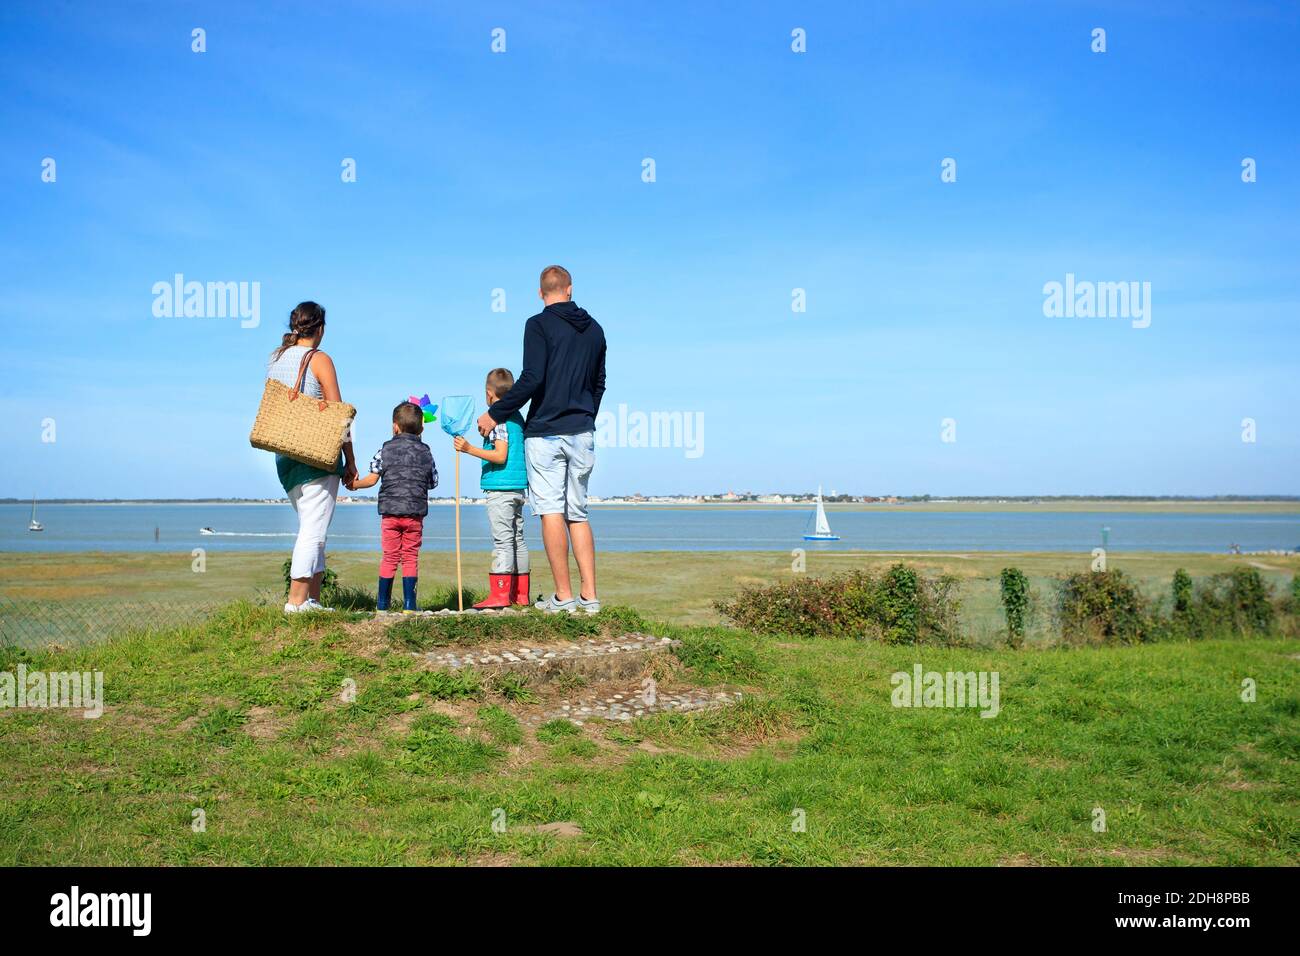 Baie de Somme (nord de la France) : famille avec deux enfants face à la mer, à la recherche d'un voilier sur l'eau, à Saint-Valery-sur-Somme, le long de la zone côtière Banque D'Images